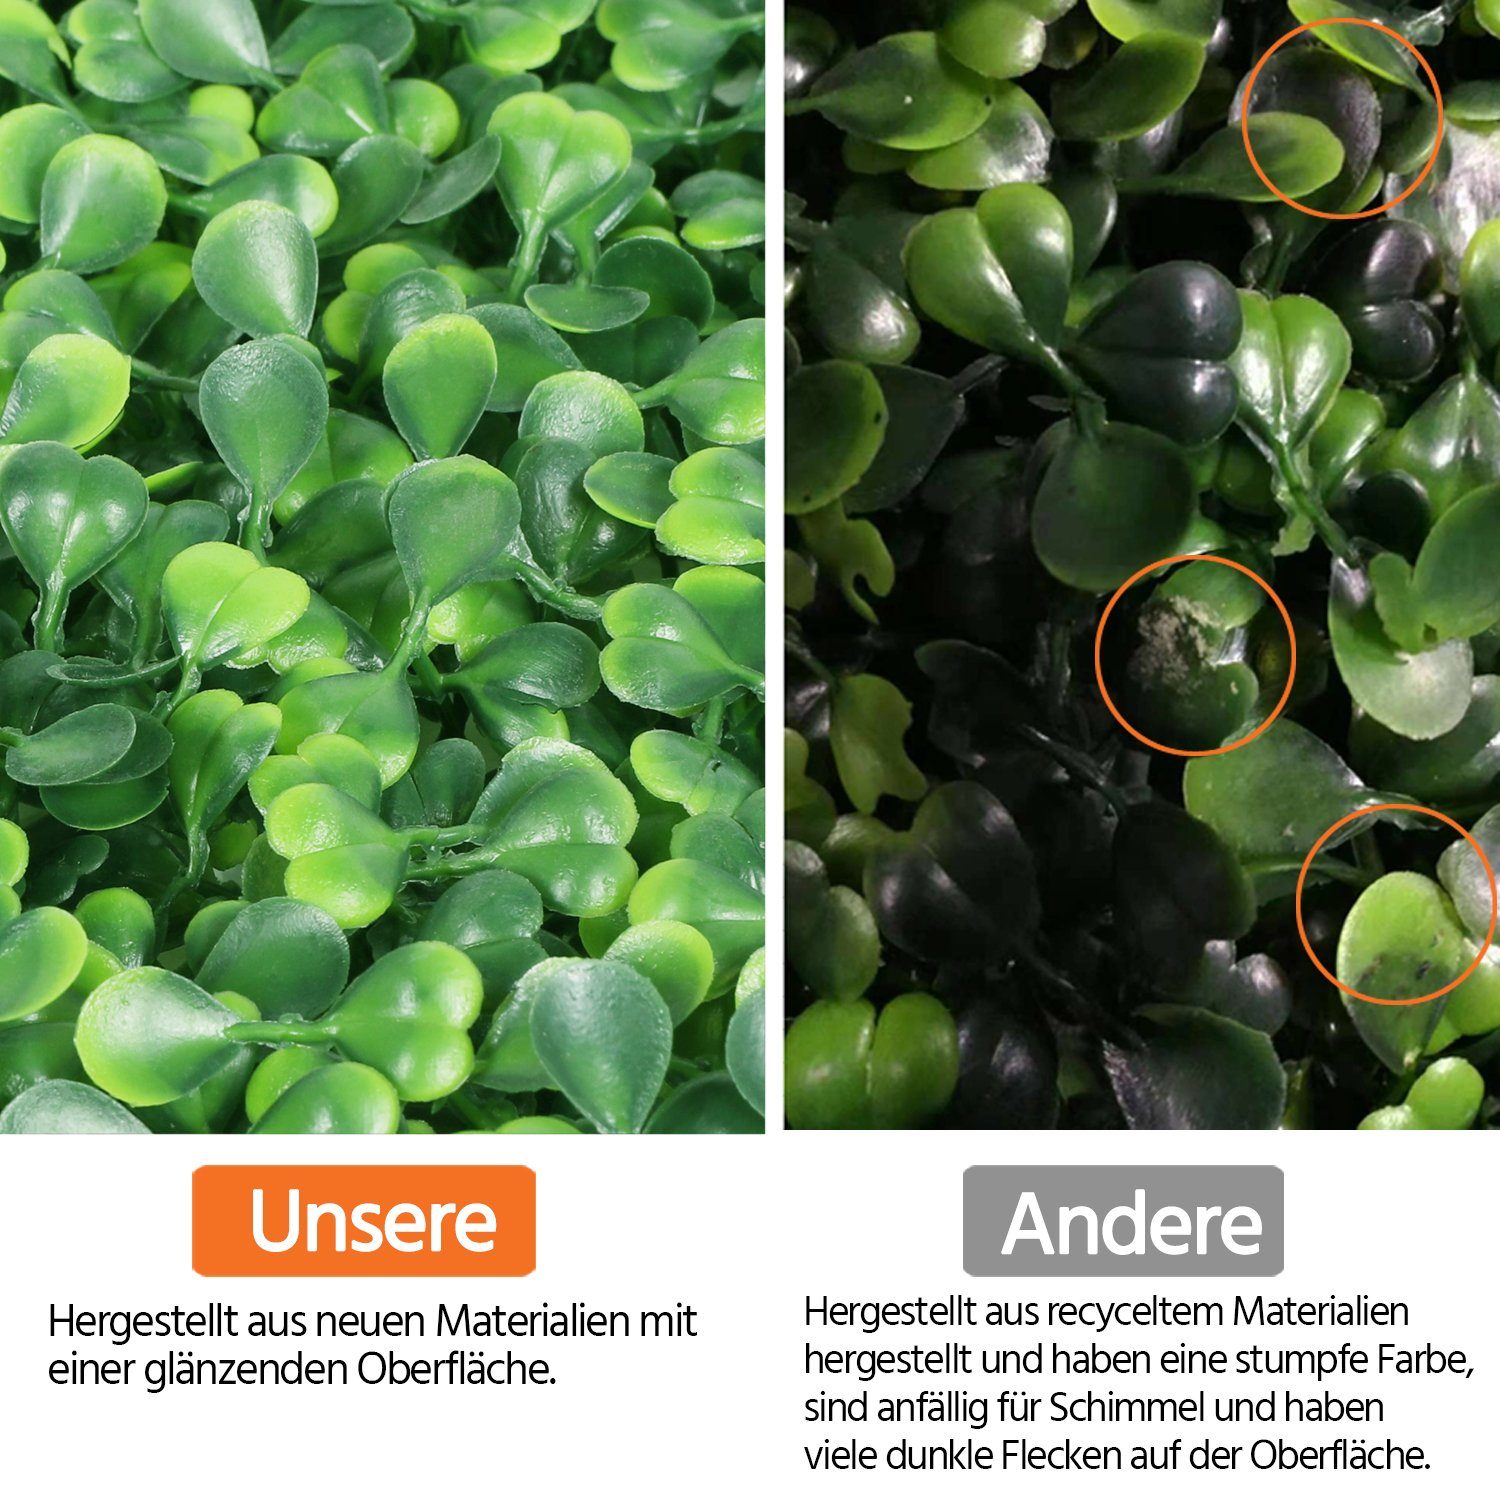 Künstliche Hecke UV-Schutz Kunstpflanze, Pflanzenwand Efeu Yaheetech,